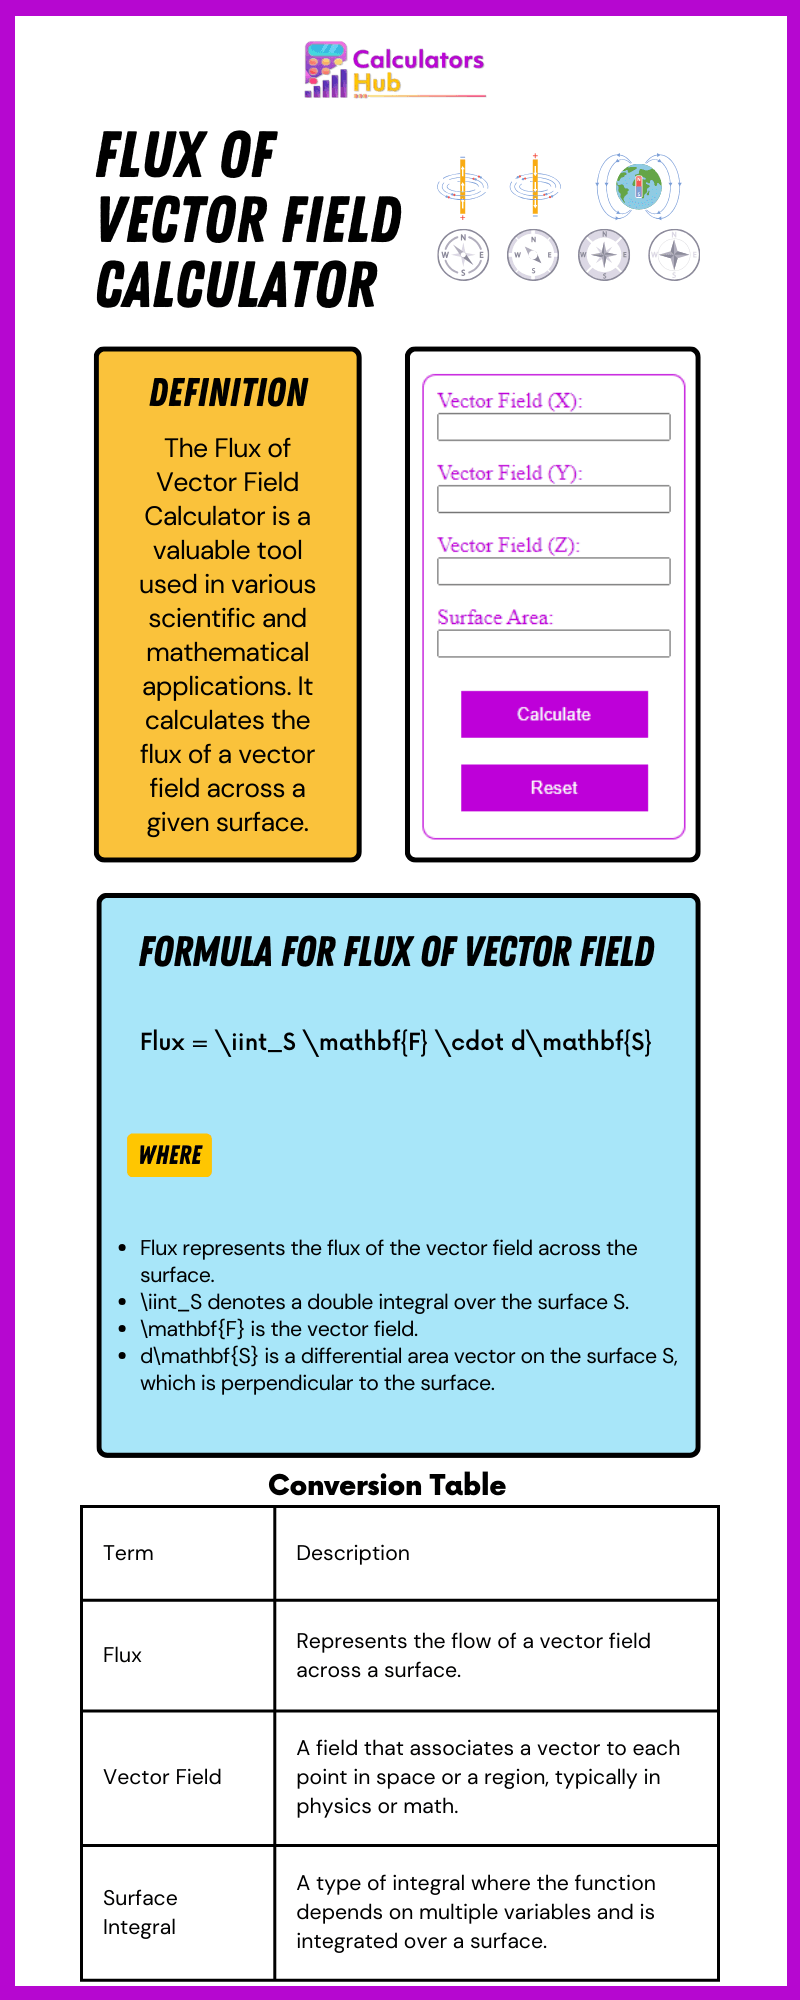 Flux of Vector Field Calculator